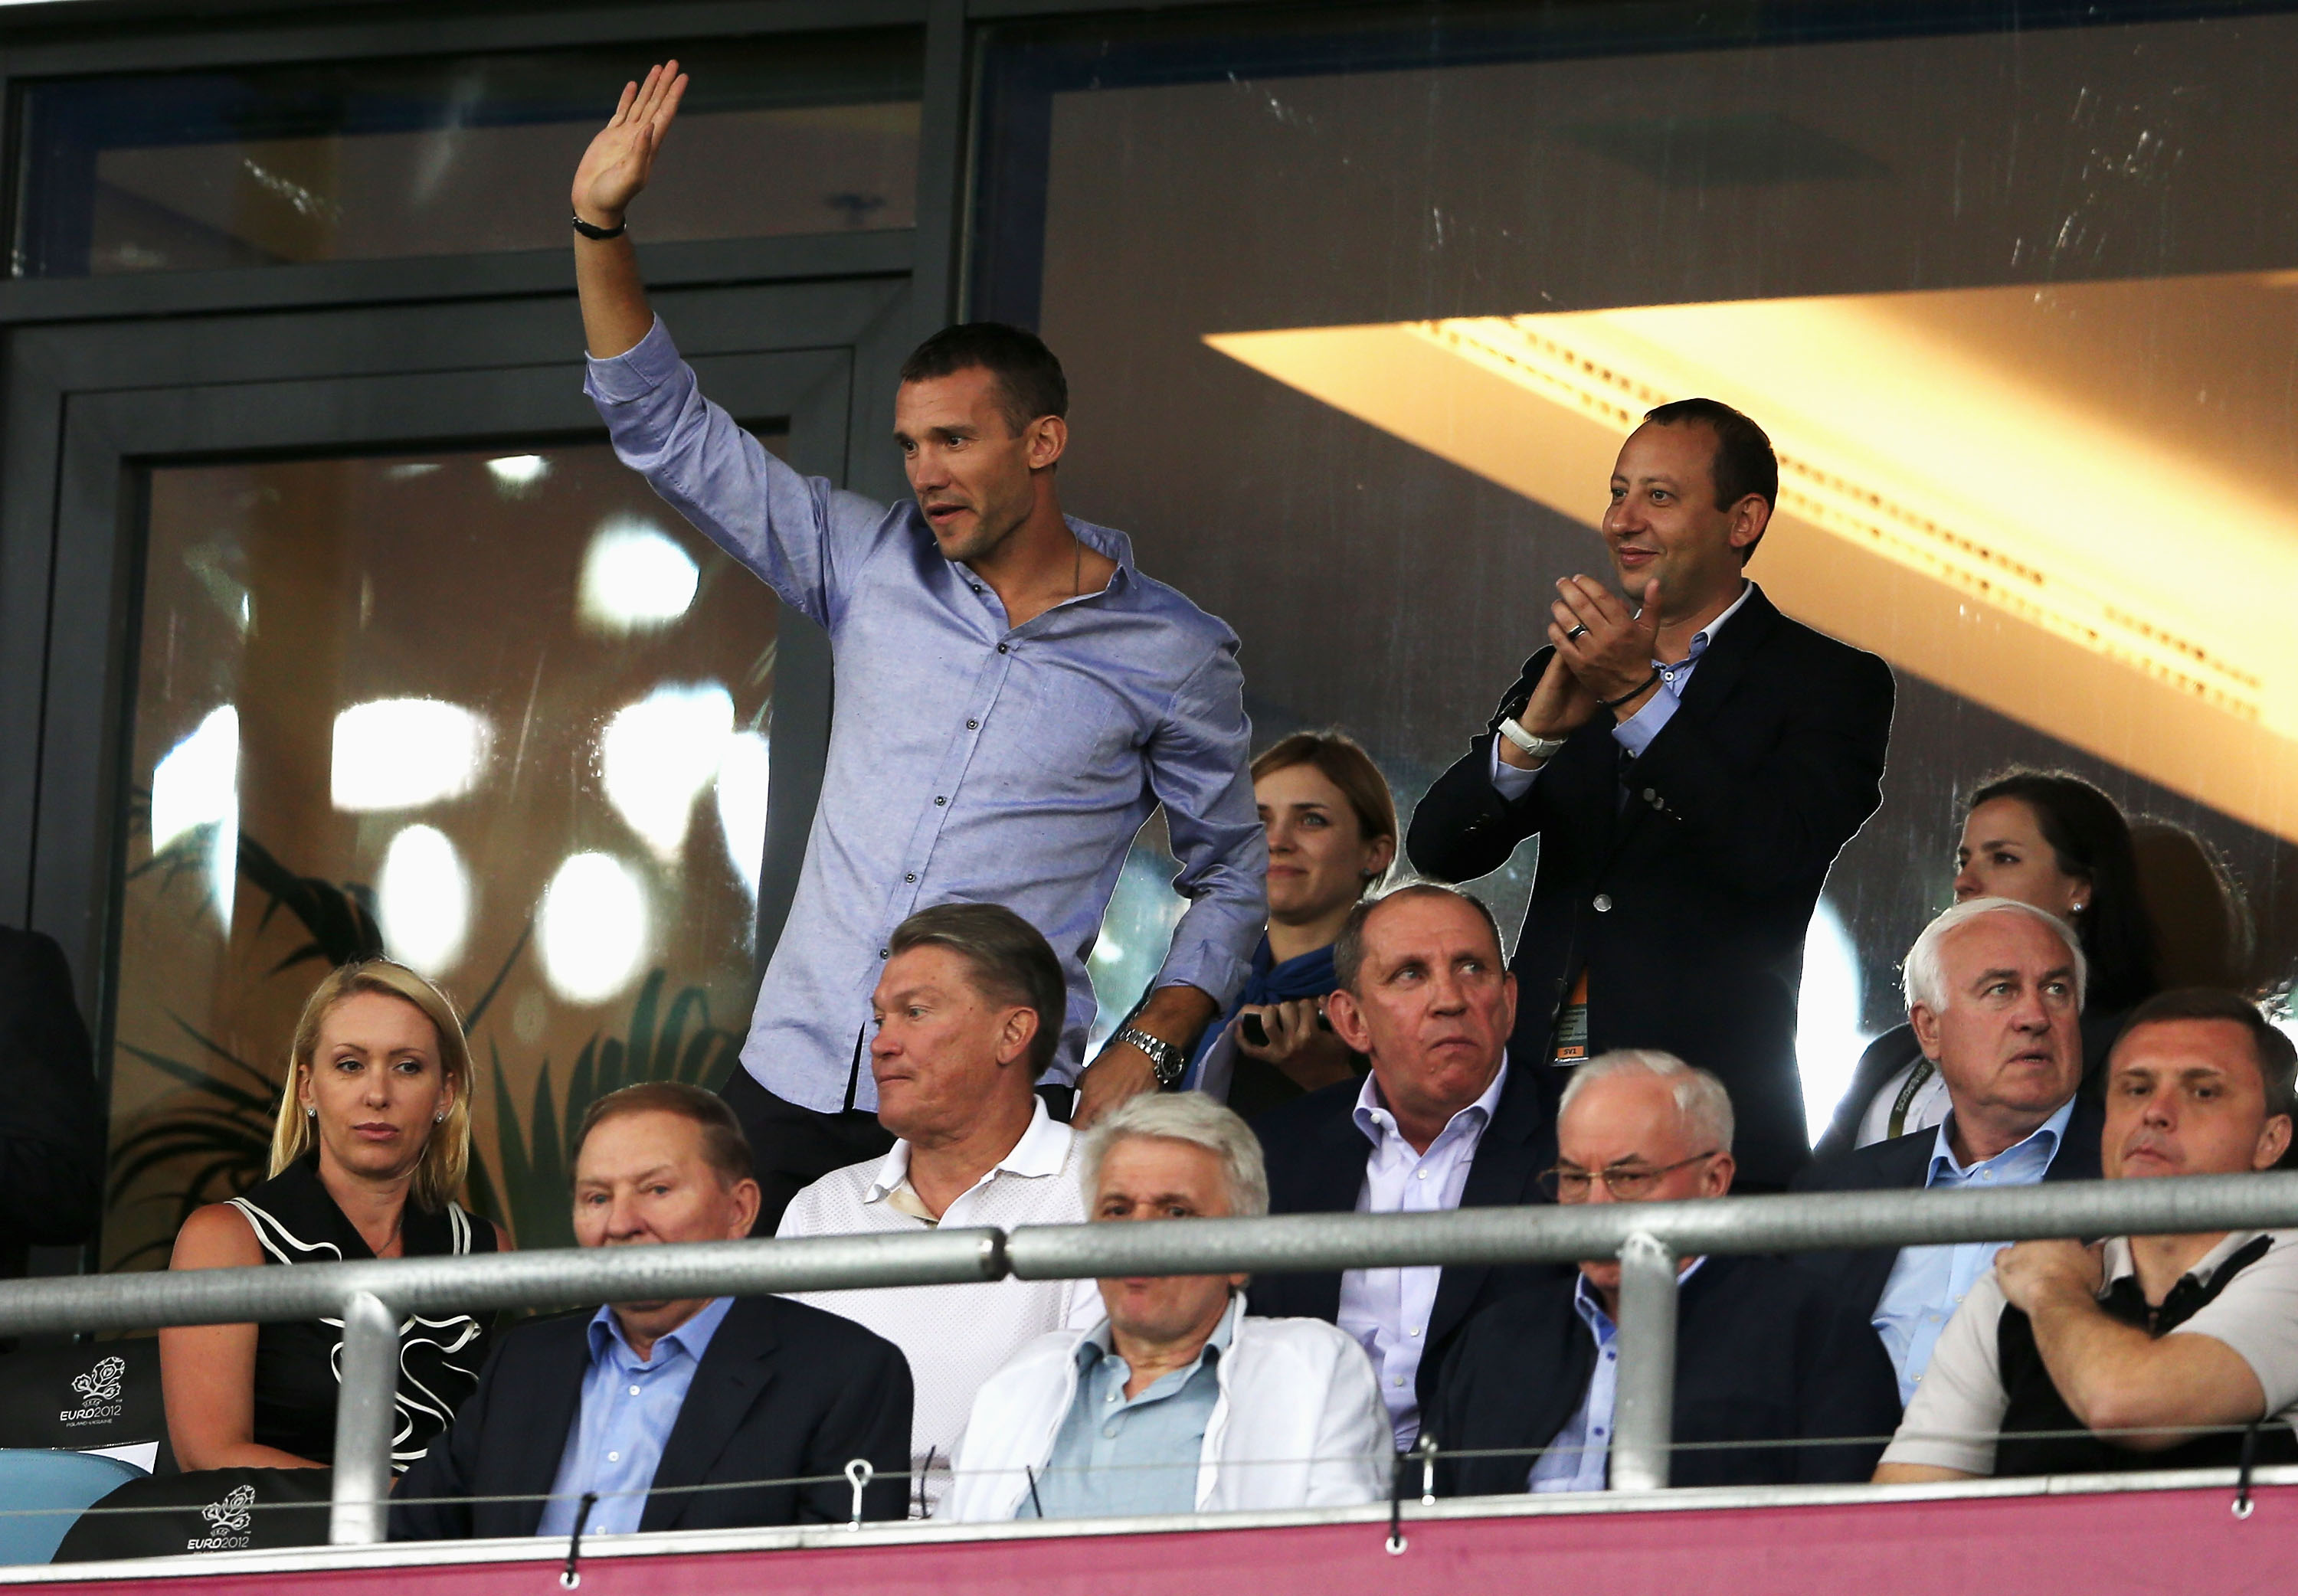 Sjevtjenko var på olympiastadion och blev hyllad av den ukrainska publiken som var i majoritet på matchen.